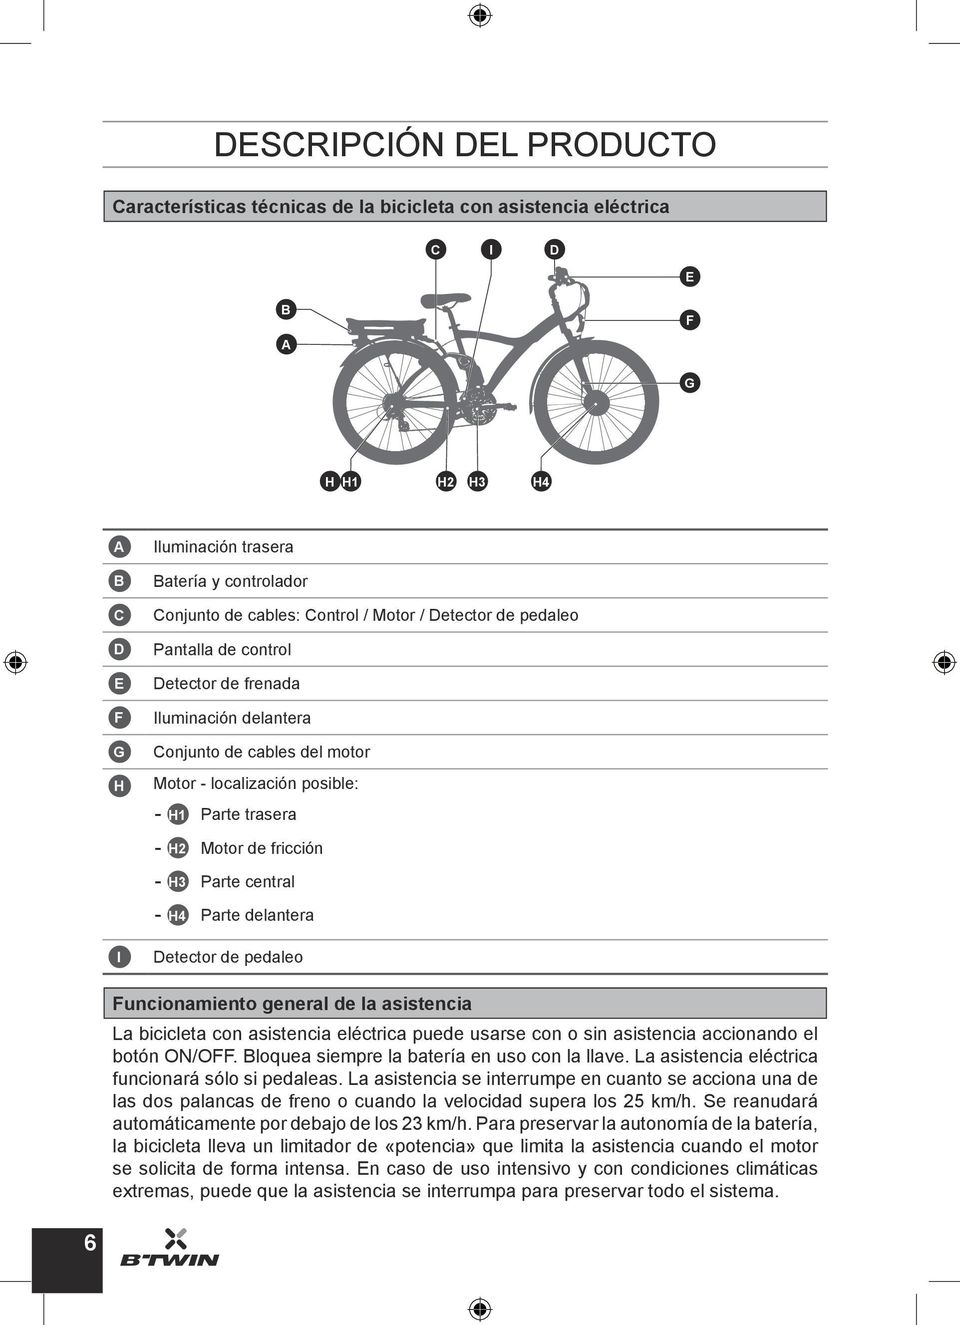 fricción - H3 Parte central - H4 Parte delantera Detector de pedaleo Funcionamiento general de la asistencia La bicicleta con asistencia eléctrica puede usarse con o sin asistencia accionando el